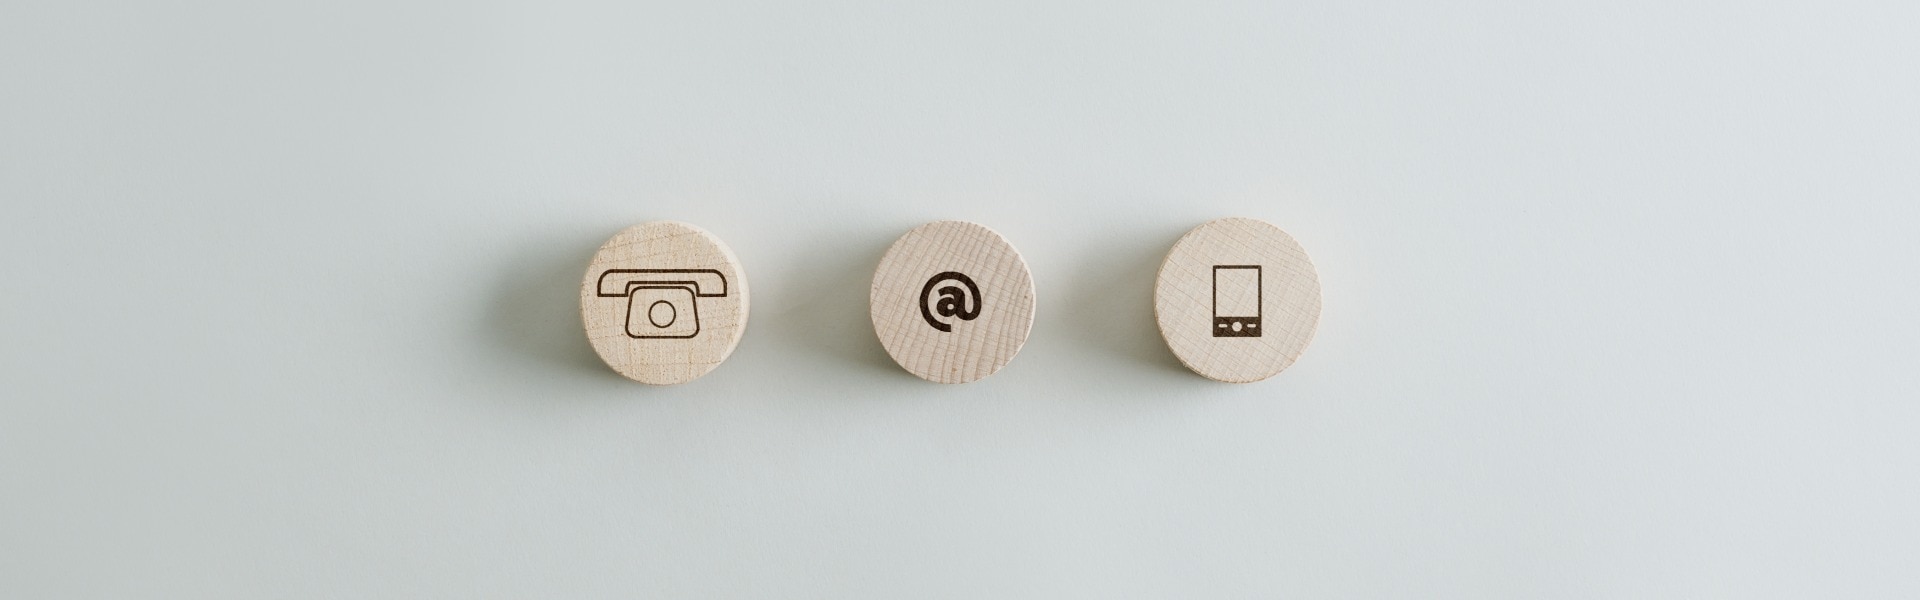 Drei Holzkreise mit Kontakt- und Kommunikationssymbolen